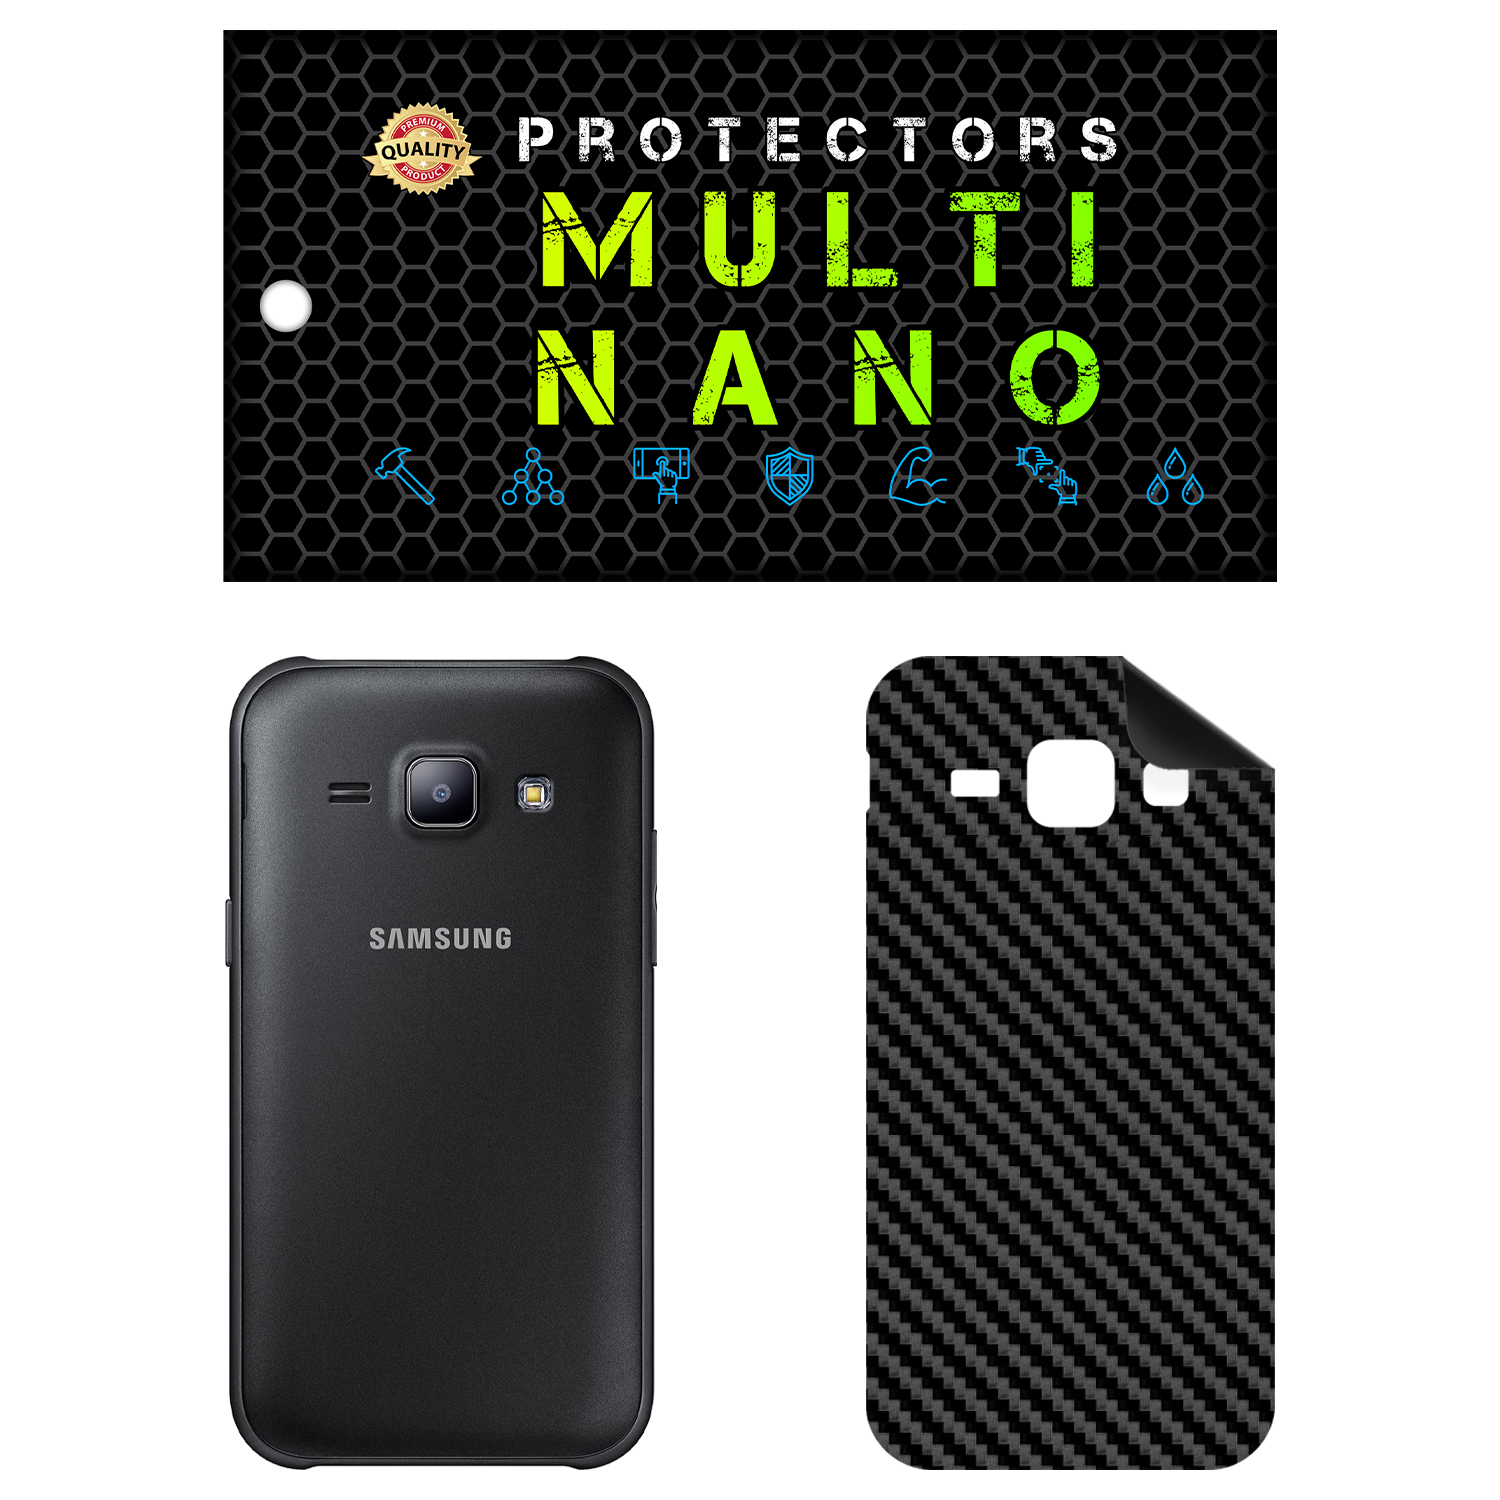 برچسب پوششی مولتی نانو مدل X-F1C مناسب برای گوشی موبایل سامسونگ Galaxy J1 